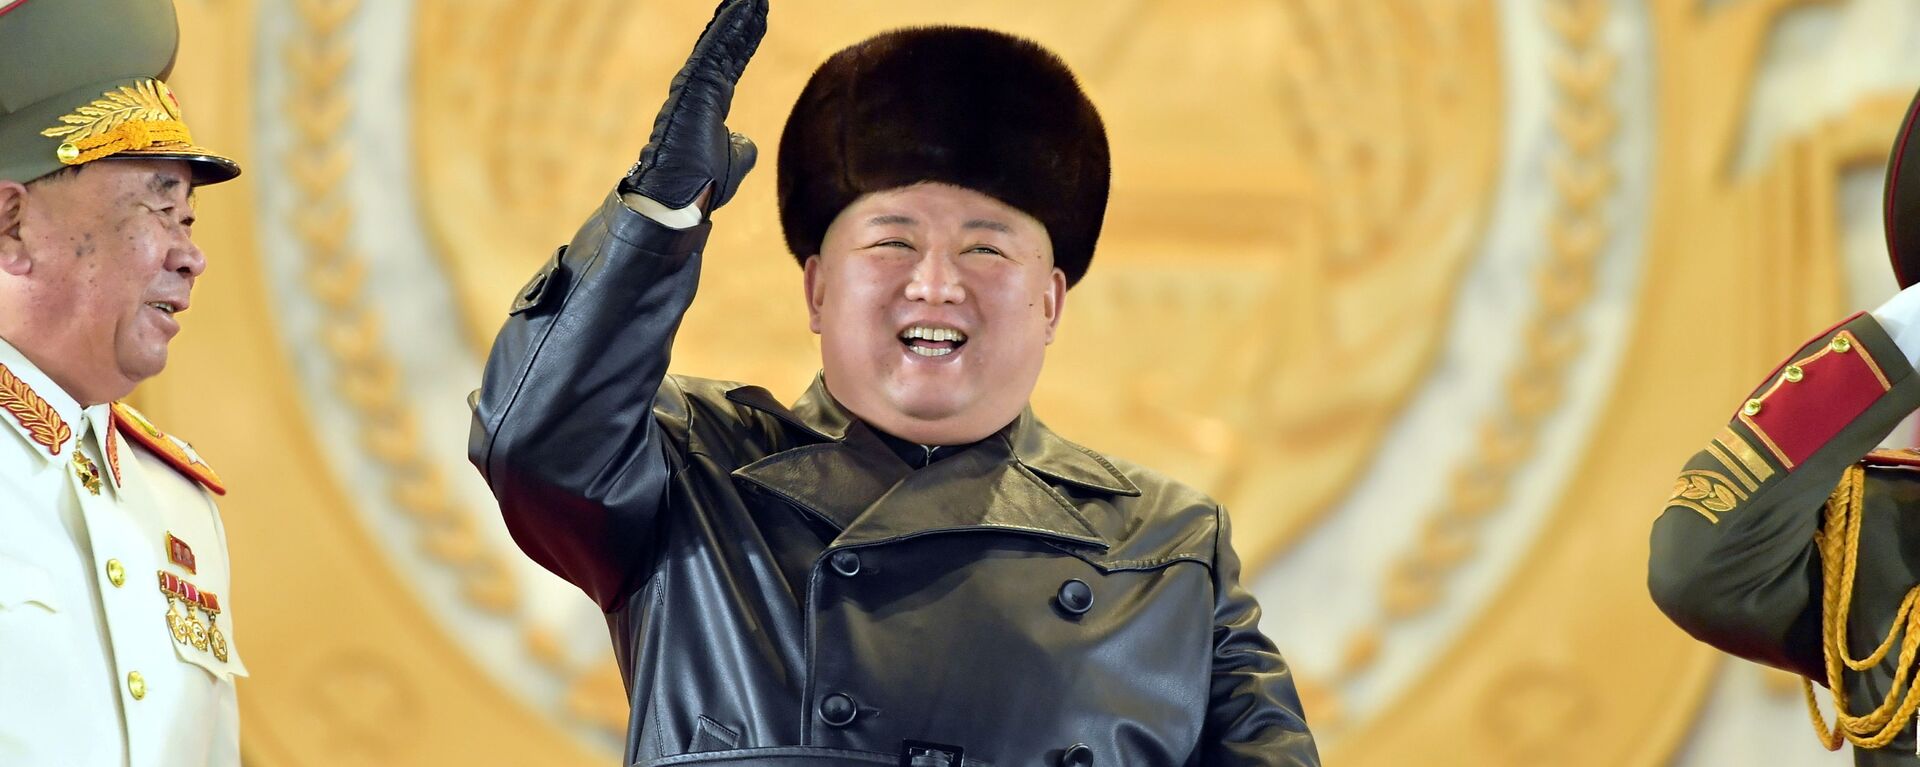 العرض العسكري بمناسبة المؤتمر الثامن لحزب العمال الكوري في بيونغ يانغ، كوريا الشمالية  14 يناير 2021 - سبوتنيك عربي, 1920, 14.03.2021